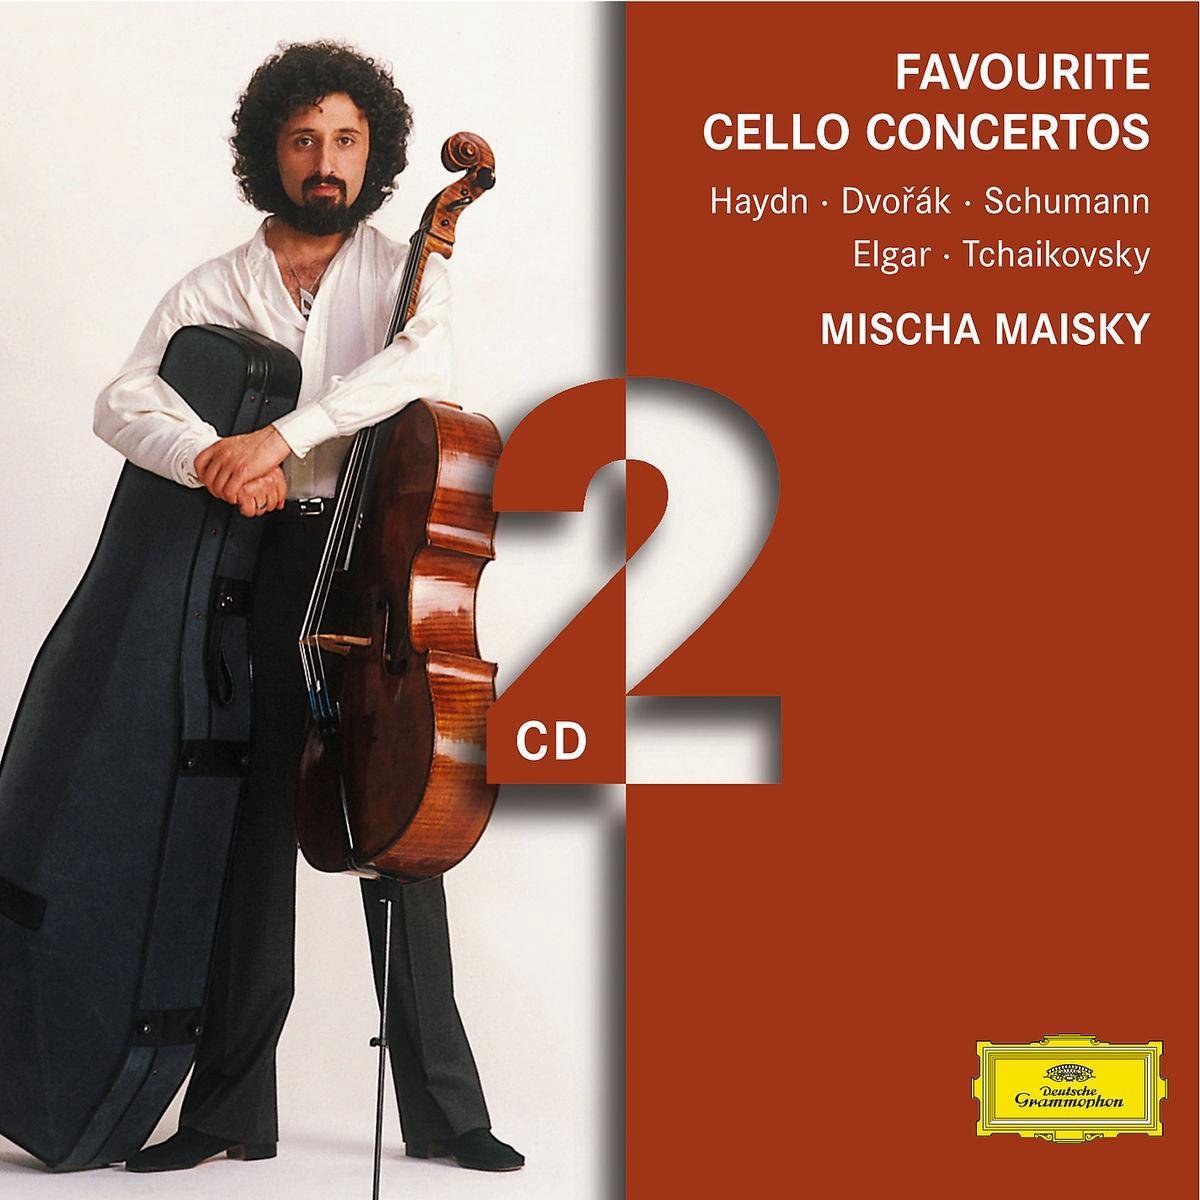 Favourite Cello Concertos - Mischa Maisky